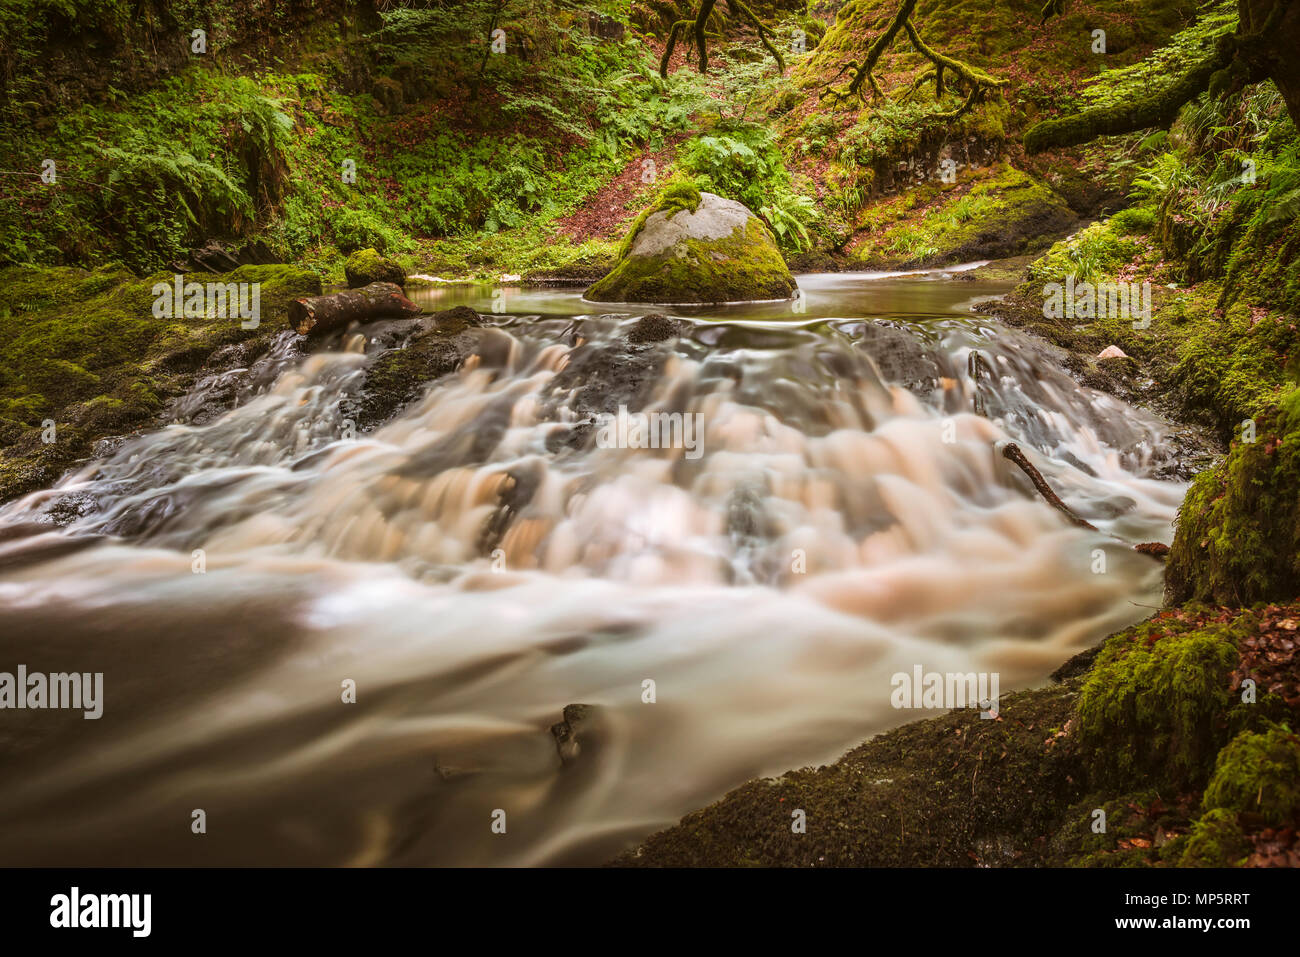 Dalcairnie falls, una pequeña cascada y arroyo cercano Dalmellington, Ayrshire, Escocia, Reino Unido Foto de stock